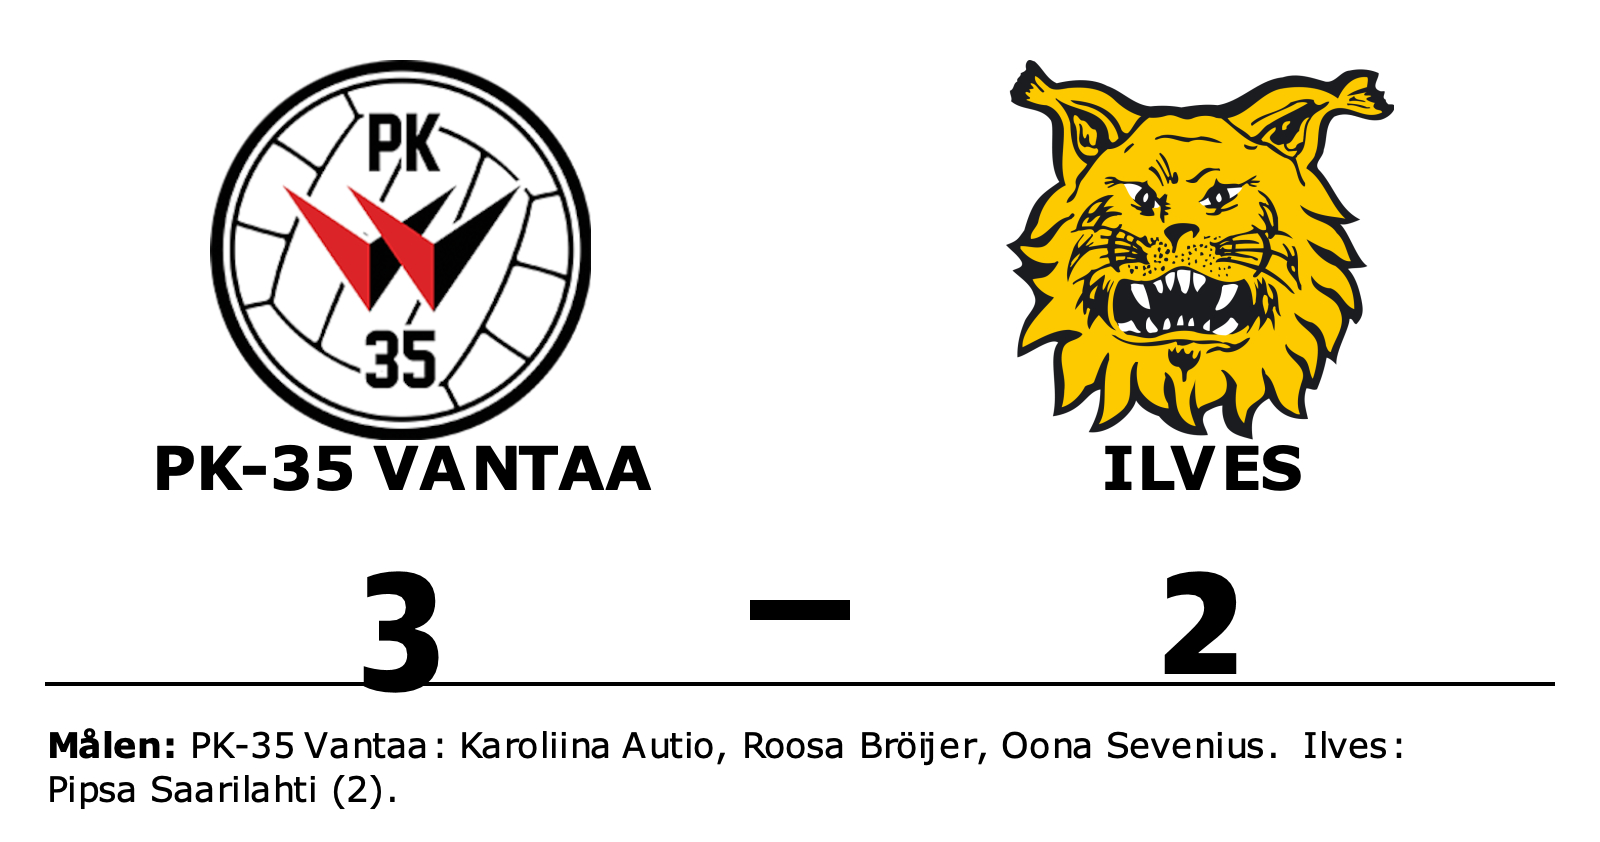 PK-35 Vantaa vann mot Ilves